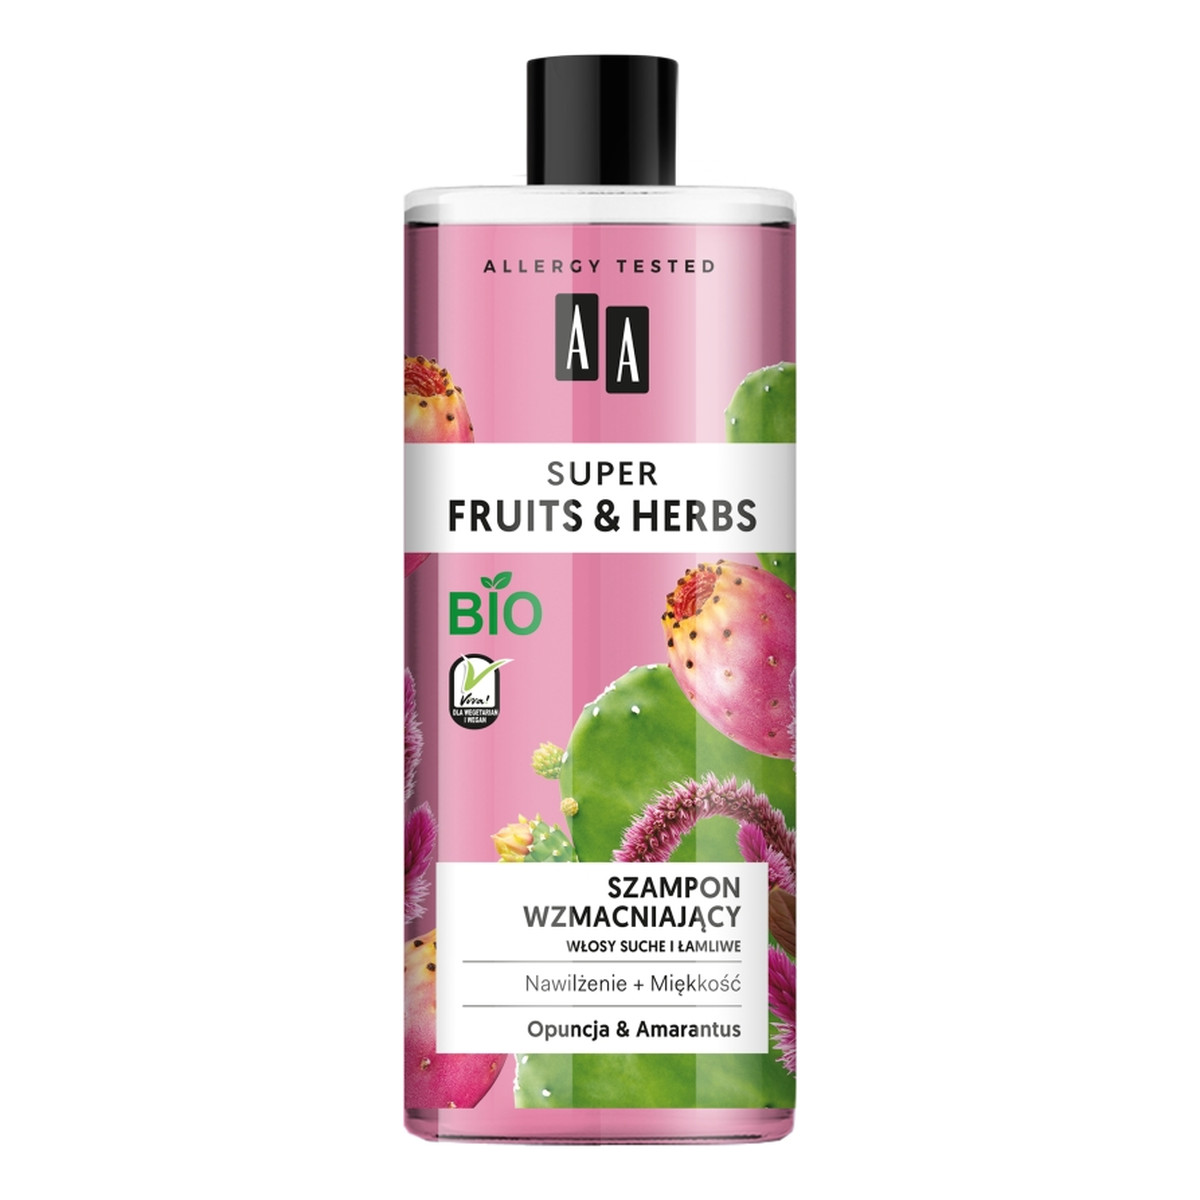 AA Super Fruits & Herbs szampon wzmacniający włosy suche i łamliwe Opuncja & Amarantus 500ml